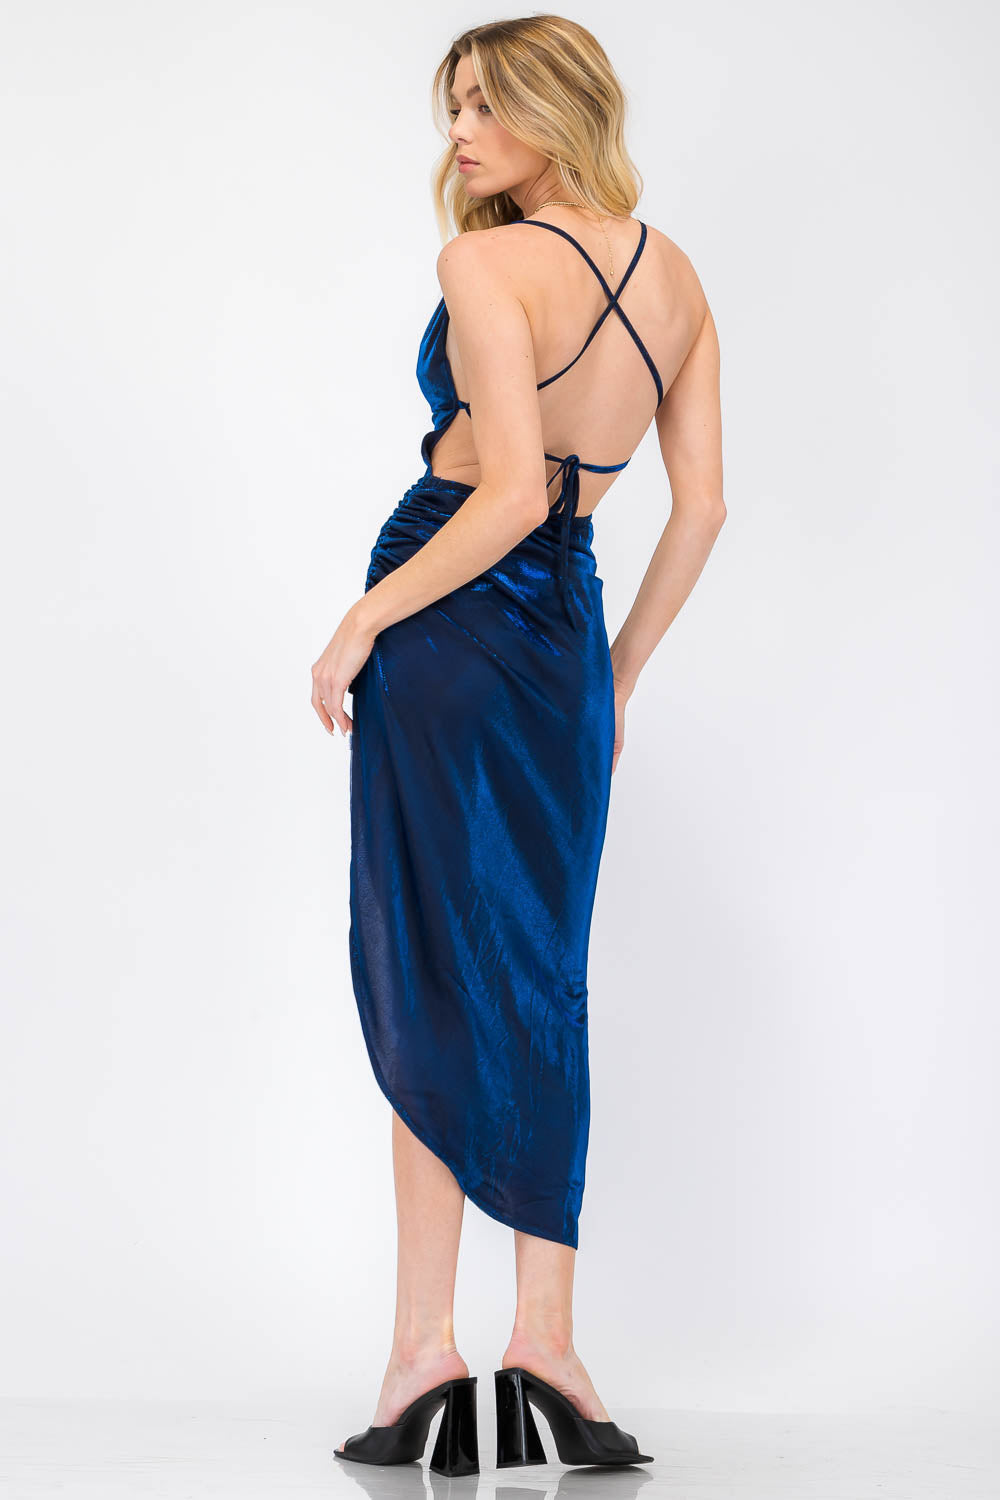 Hayze Blue Shimmer Overlay Open Back Leg Slit Dress